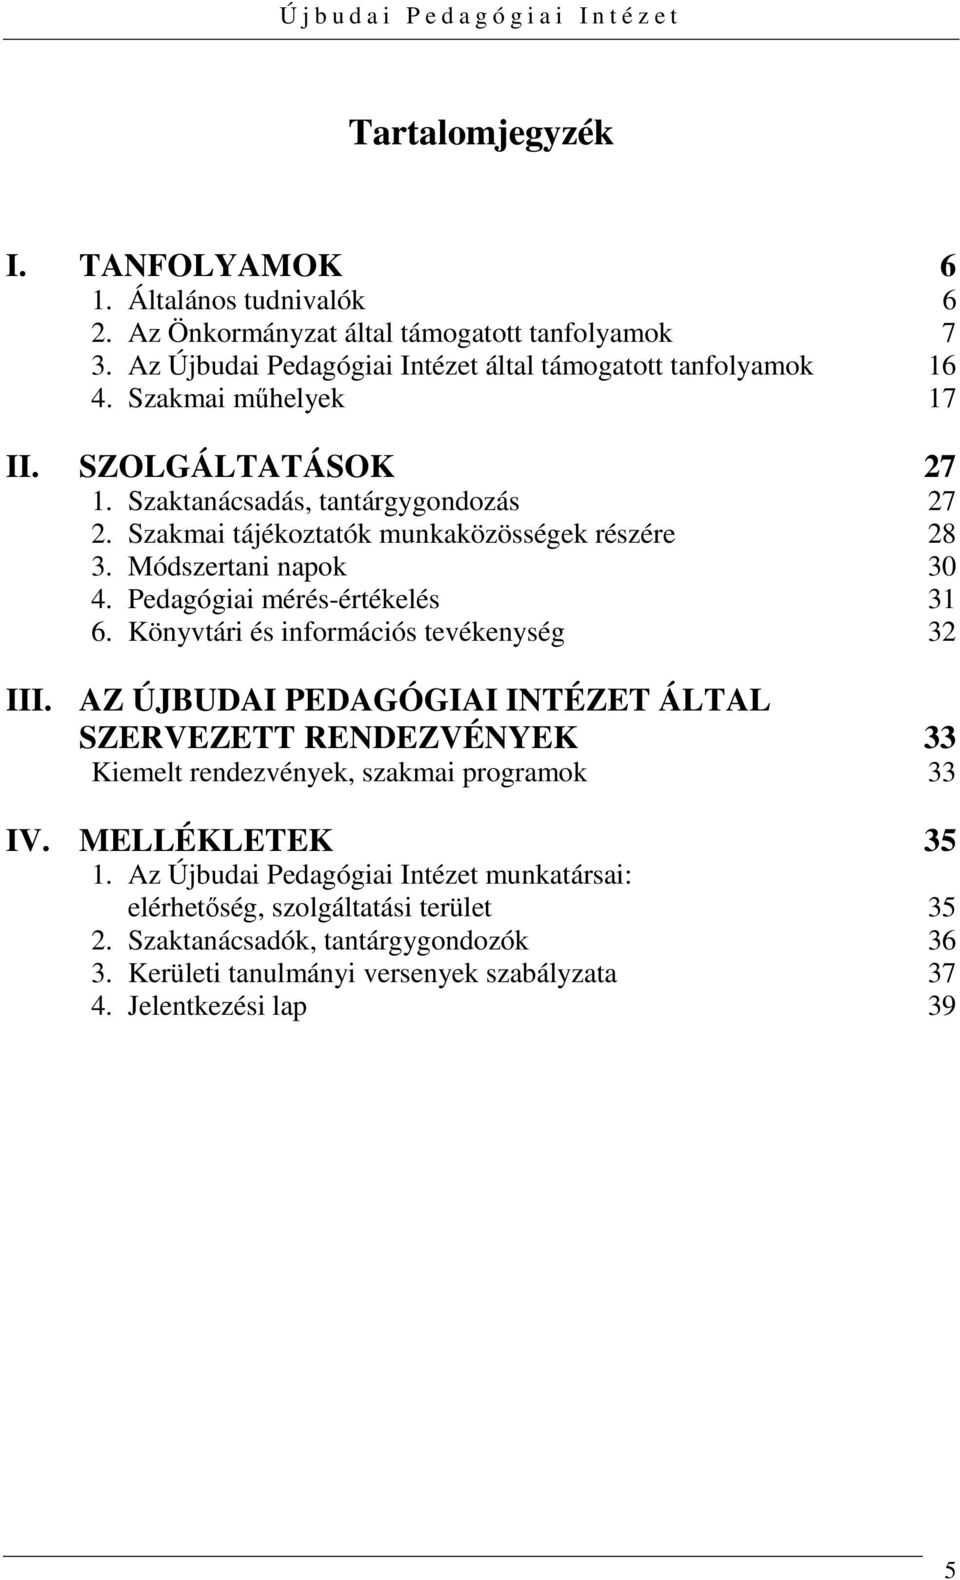 Pedagógiai mérés-értékelés 31 6. Könyvtári és információs tevékenység 32 III.